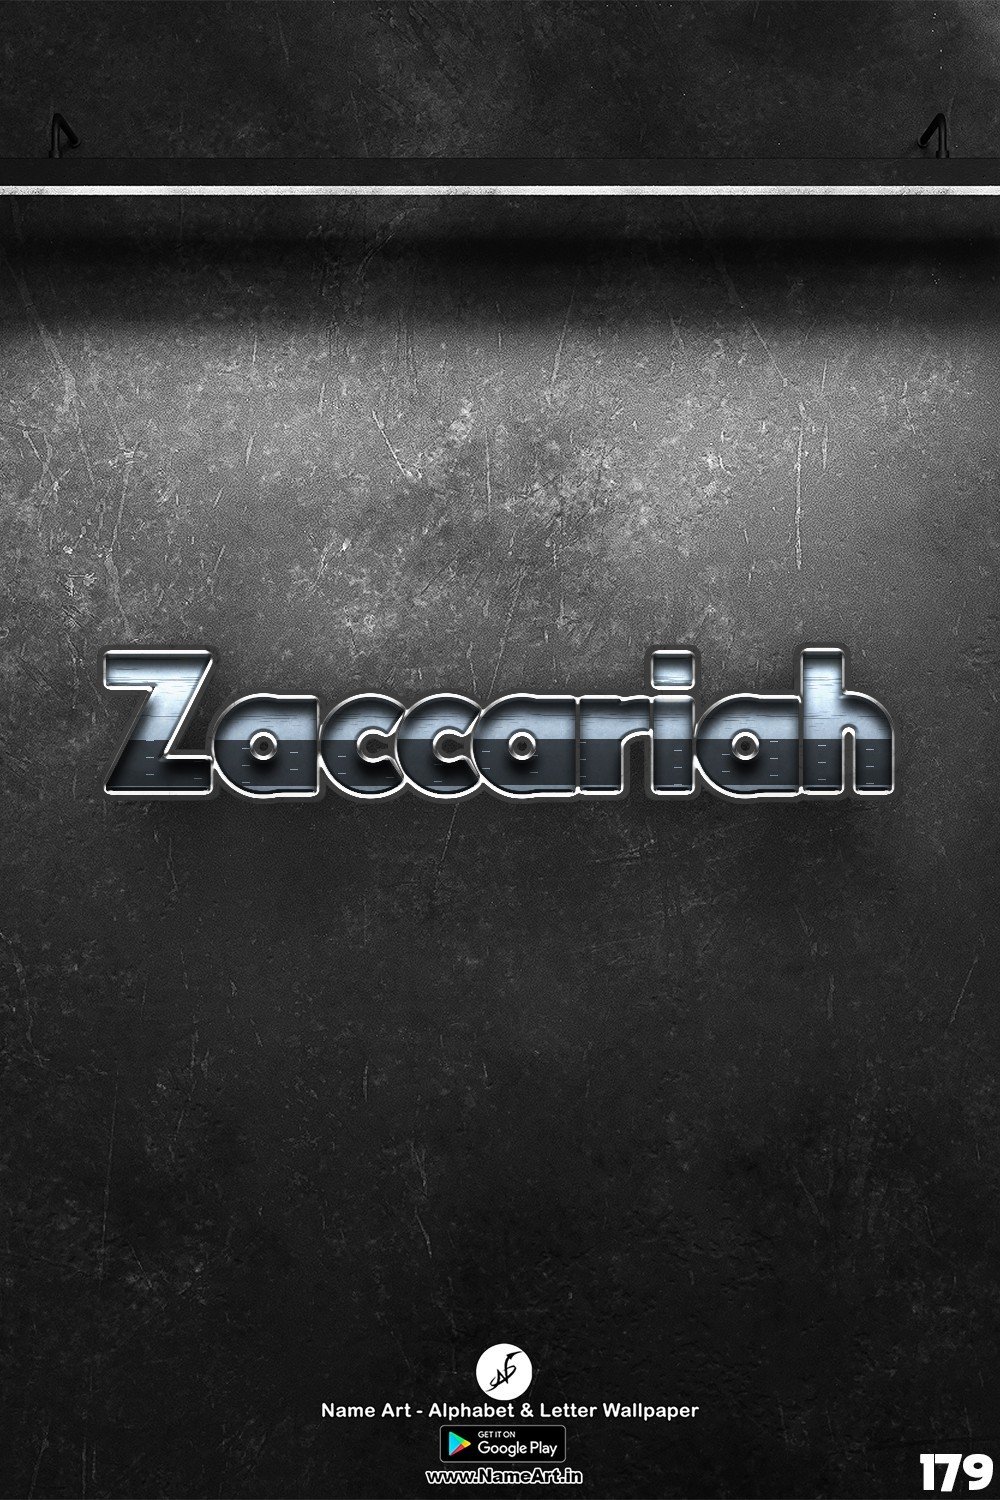 Zaccariah | Whatsapp Status Zaccariah | Happy Birthday Zaccariah !! | New Whatsapp Status Zaccariah Images |